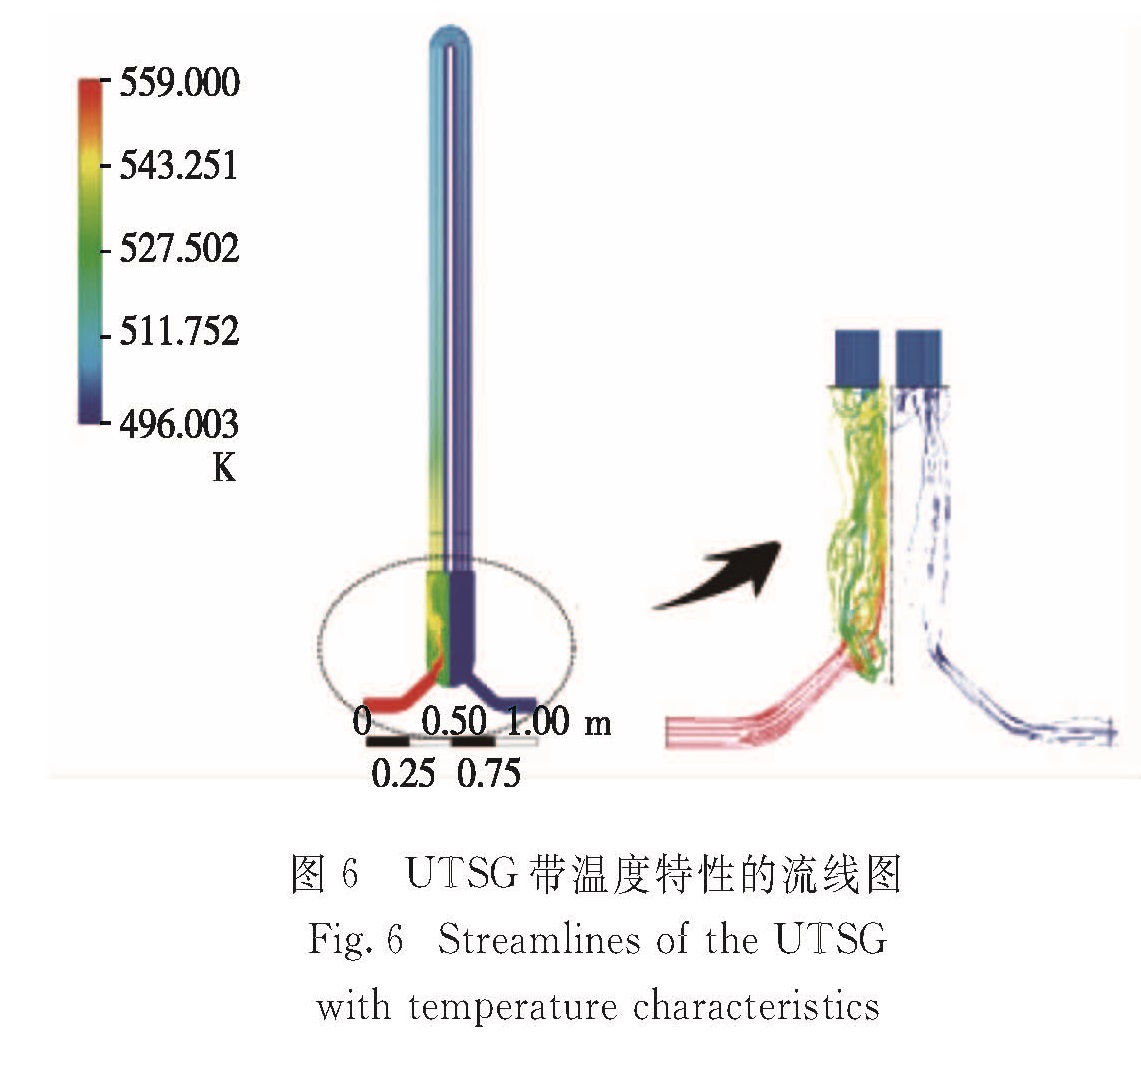 图6 UTSG带温度特性的流线图<br/>Fig.6 Streamlines of the UTSG with temperature characteristics